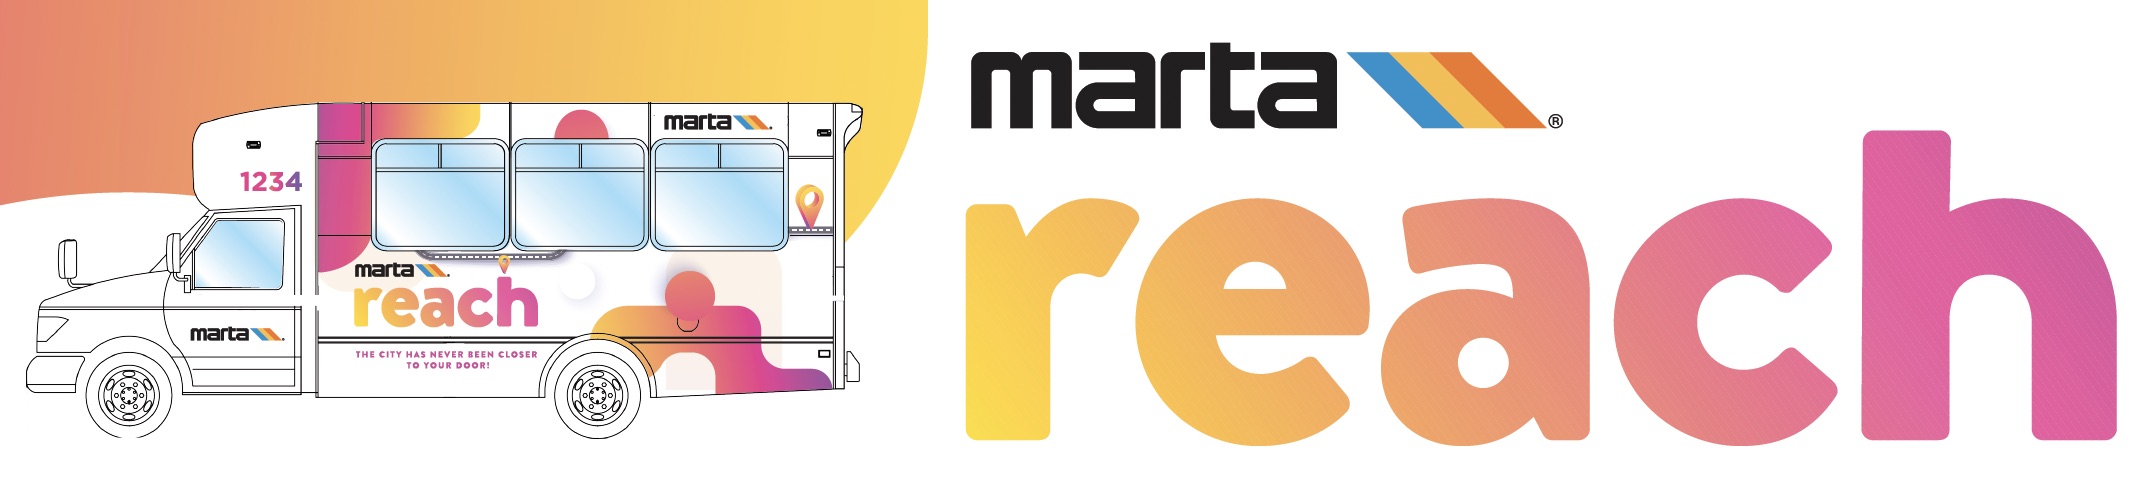 marta-reach-logo